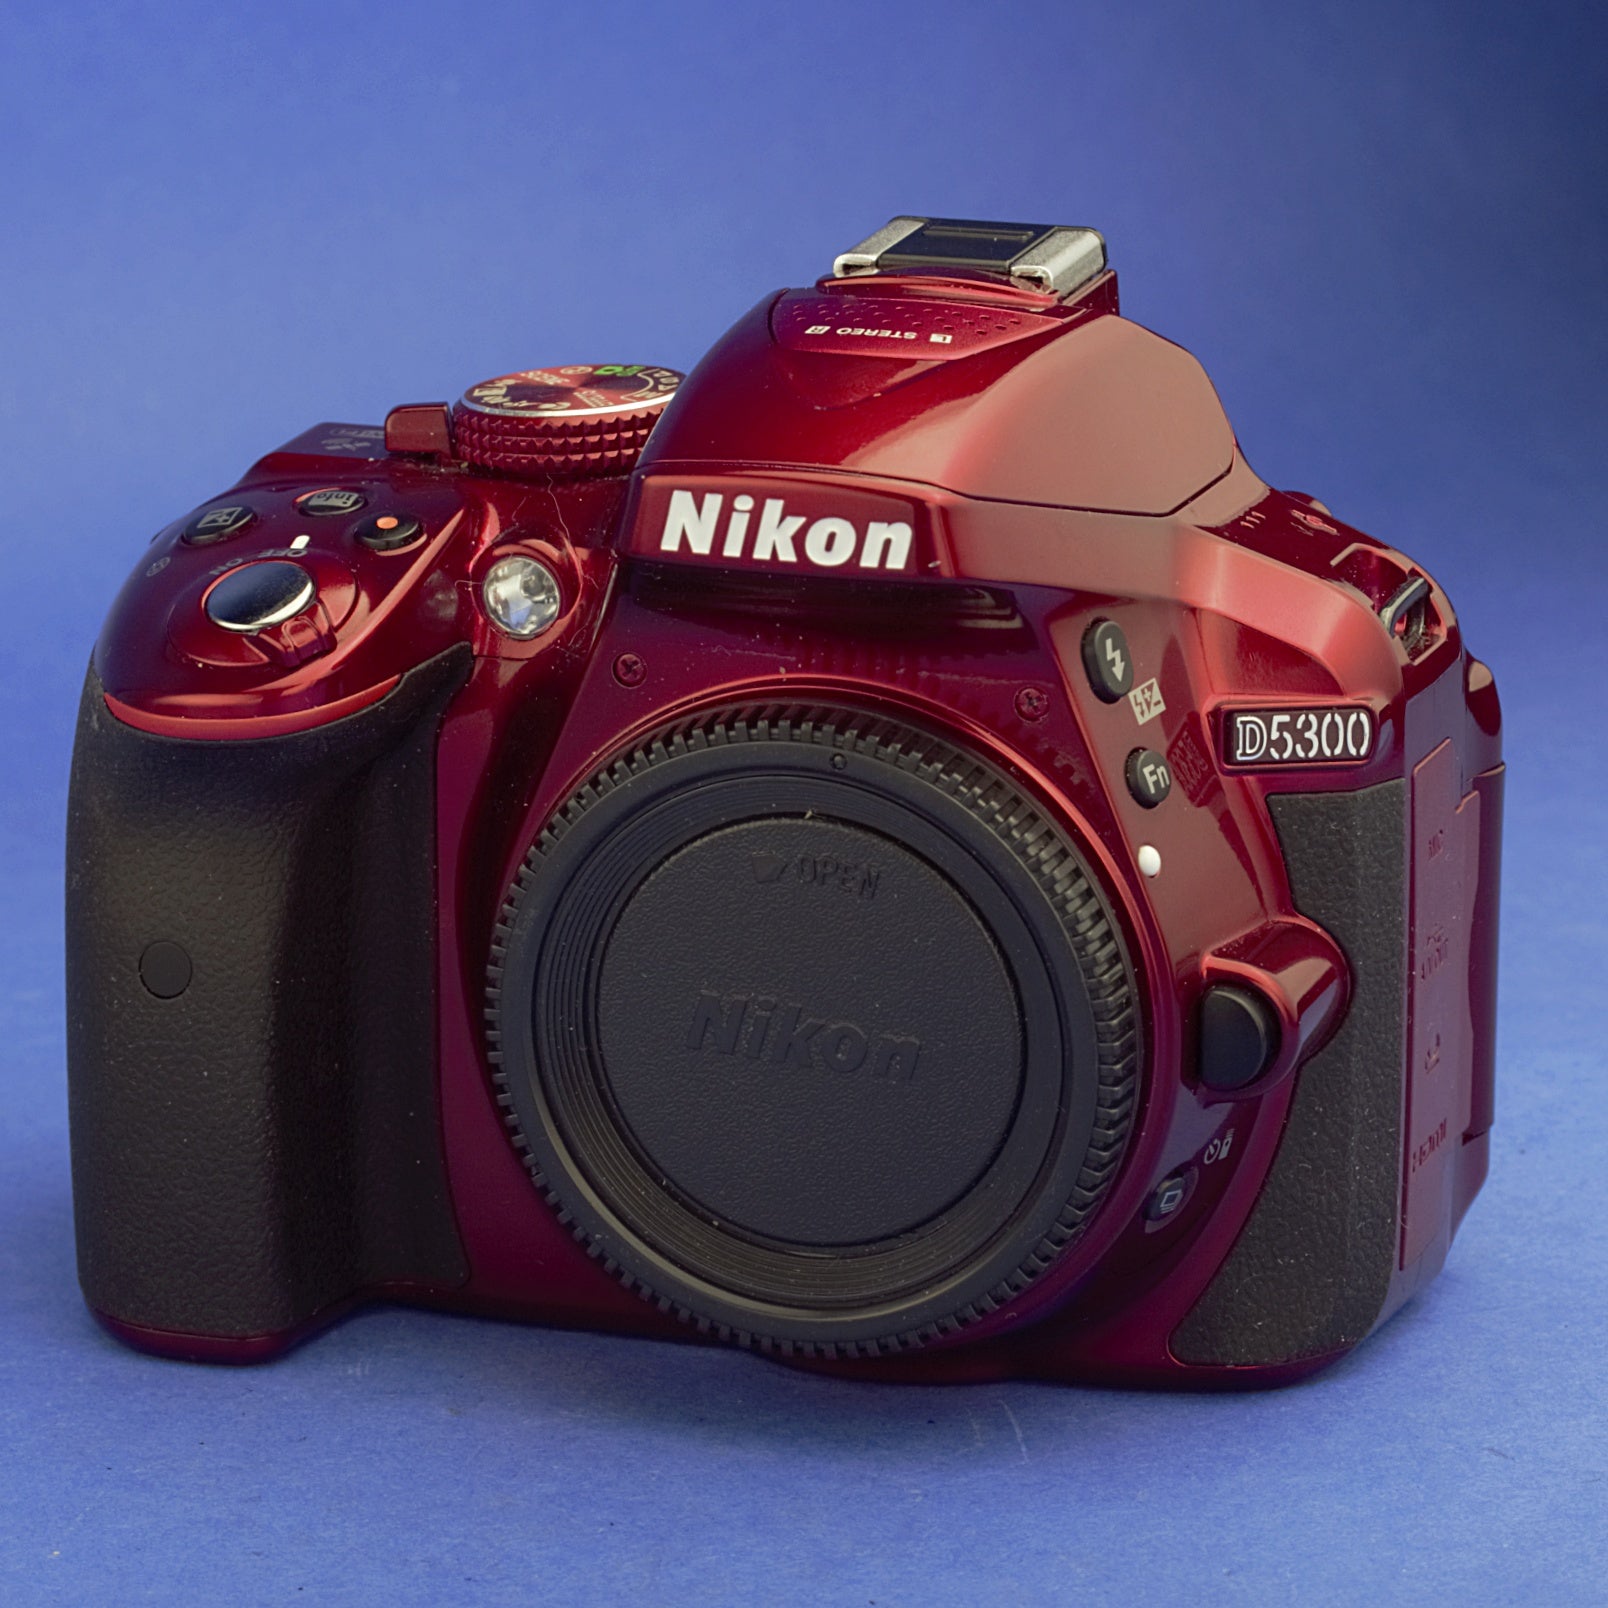 Nikon D5300 Digital Camera Body 7100 Actuations